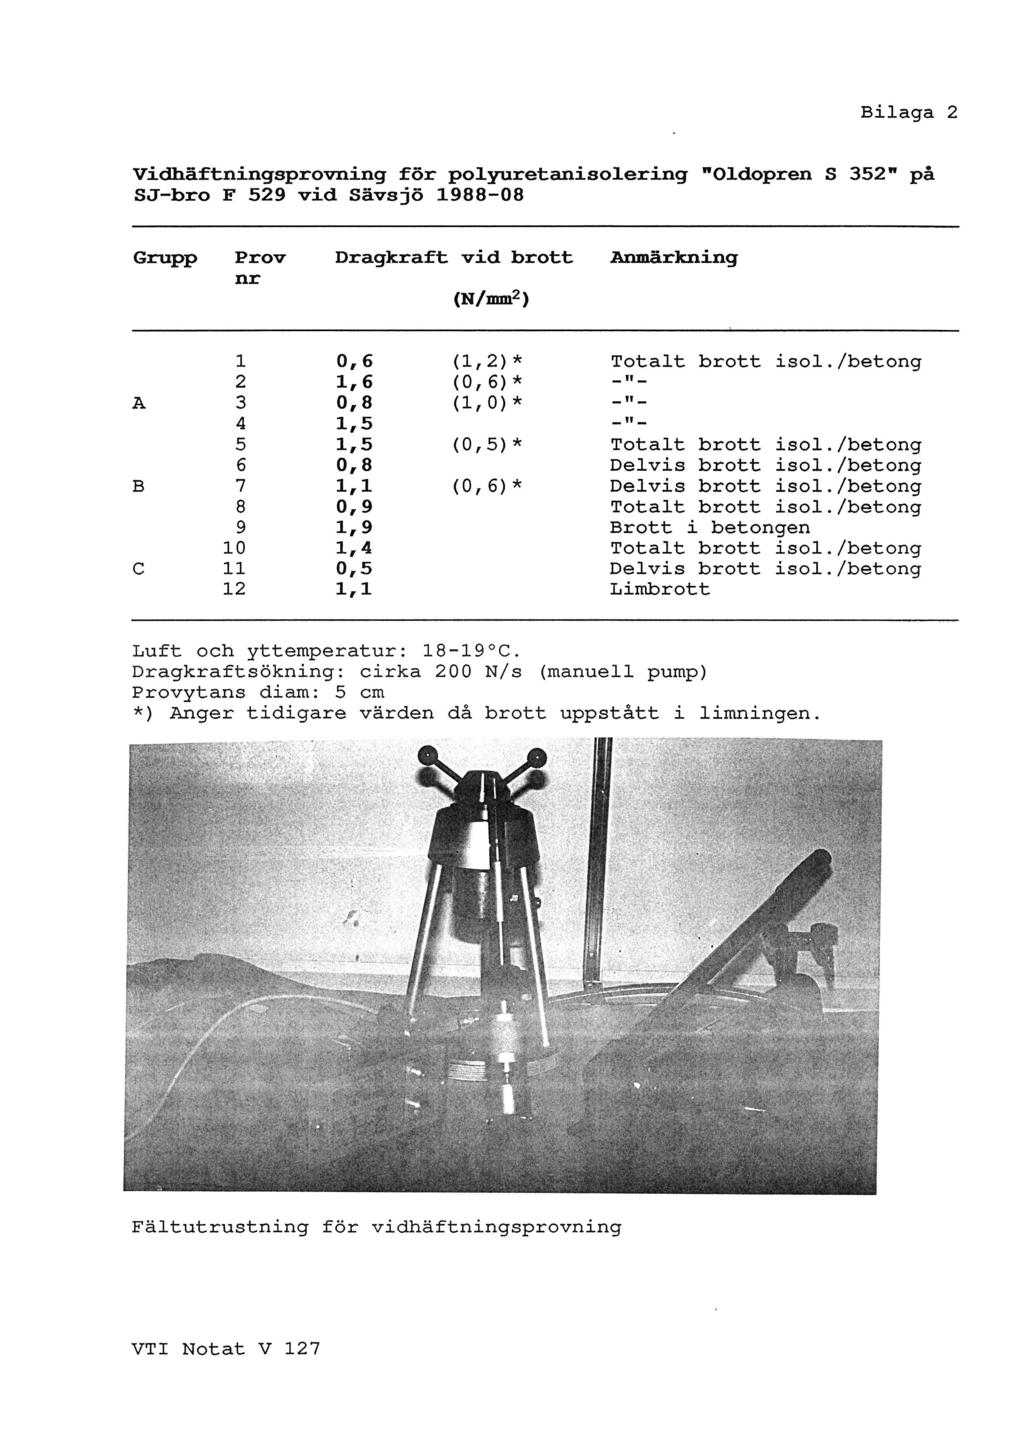 Bilaga 2 'vidhäftningsprovning för polyuretanisolering Oldopren S 352' på SJFbro F 529 vid Sävsjö 1988-08 Grupp Prov Dragkraft vid.brott.anmärkning nr (N/mmz) 1 0,6 (1,2)* Totalt brott isol.